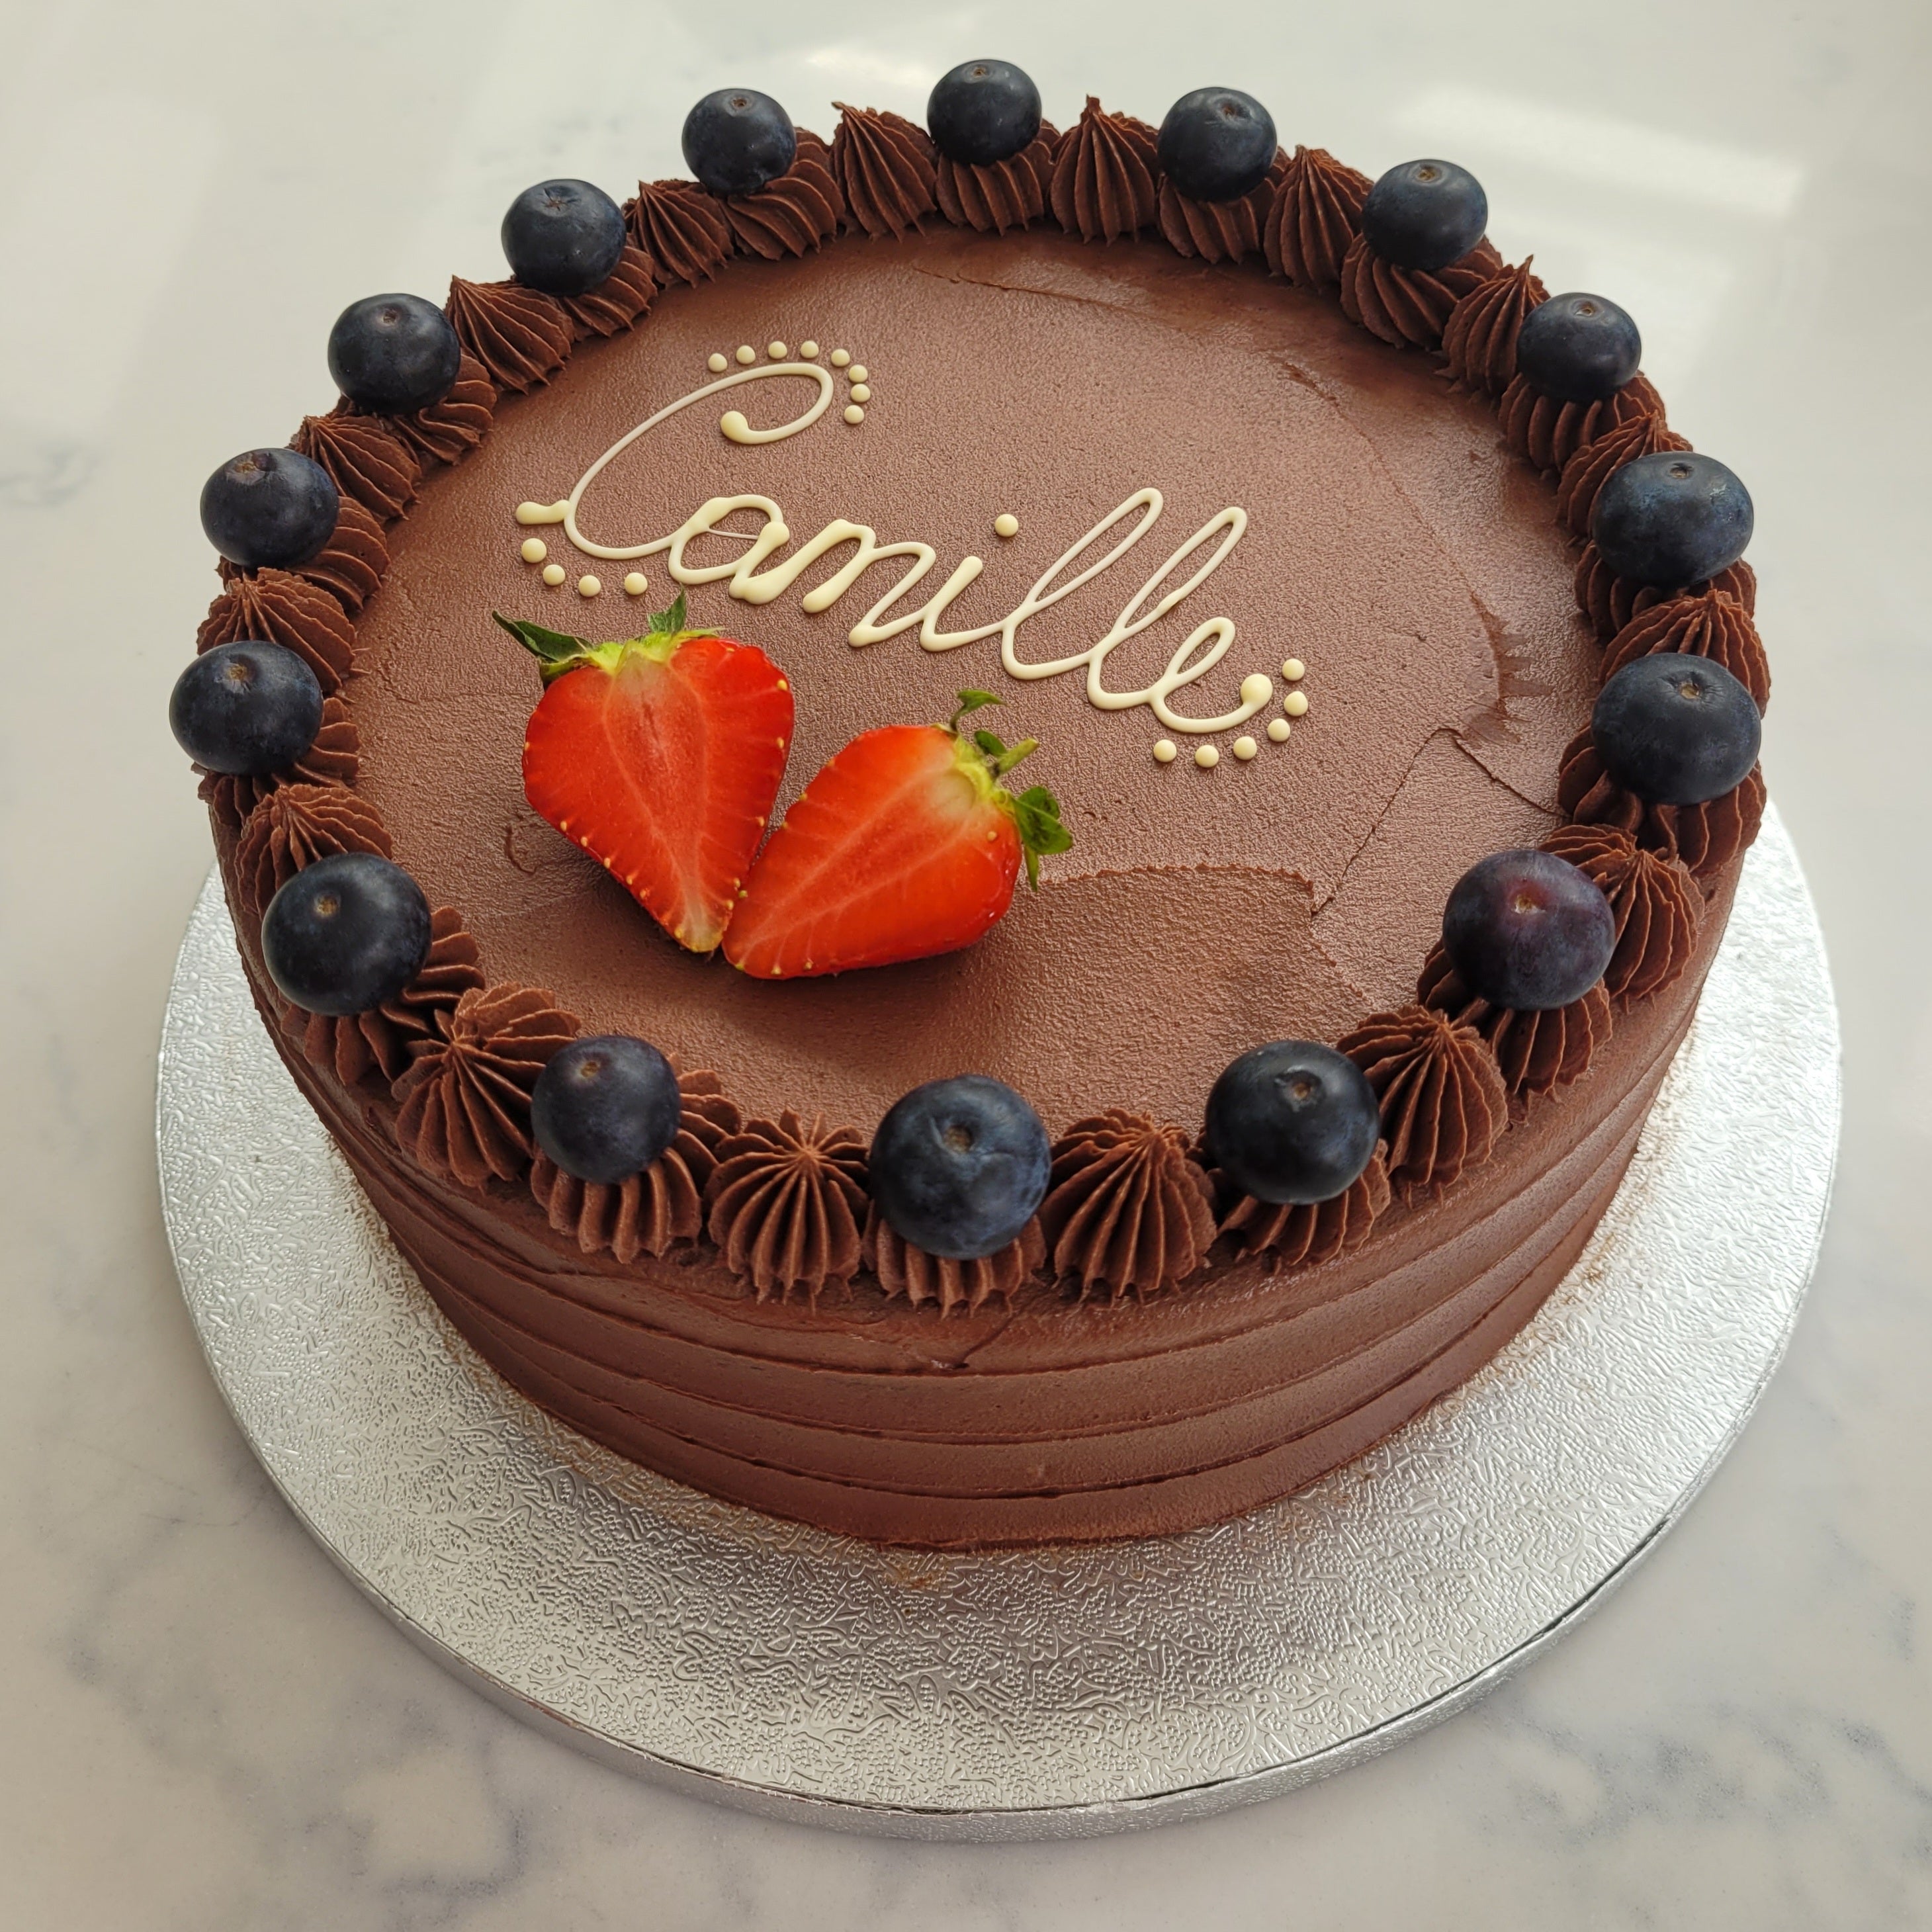 Chocolate & Berries Cake